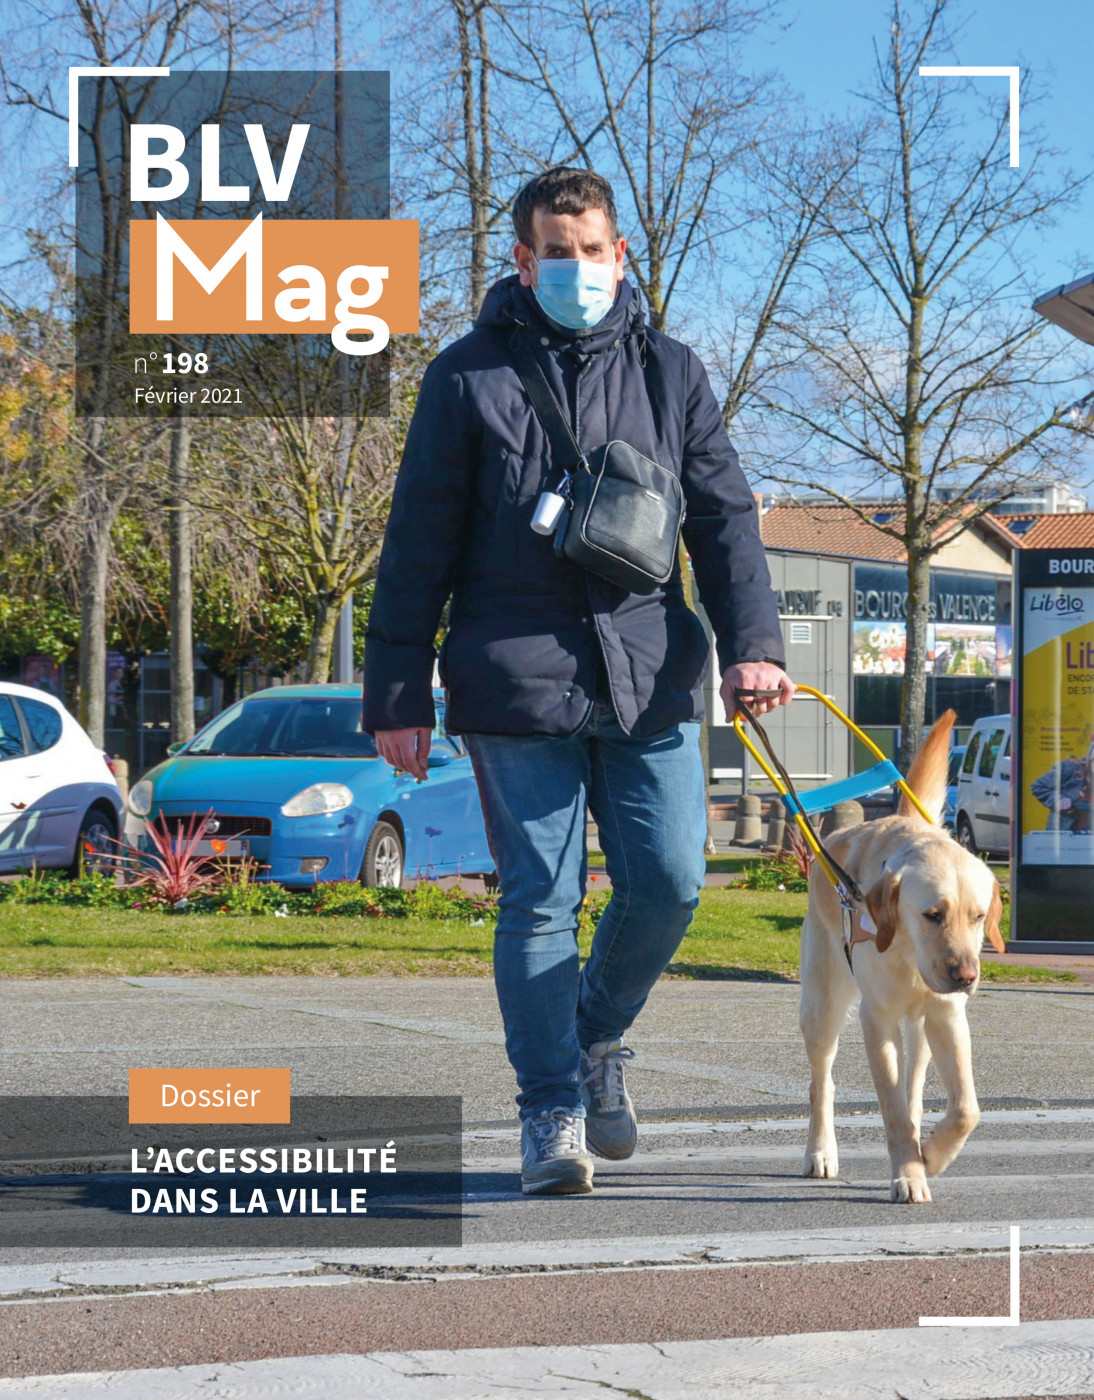 BLV Mag n°198 – Fevrier 2021